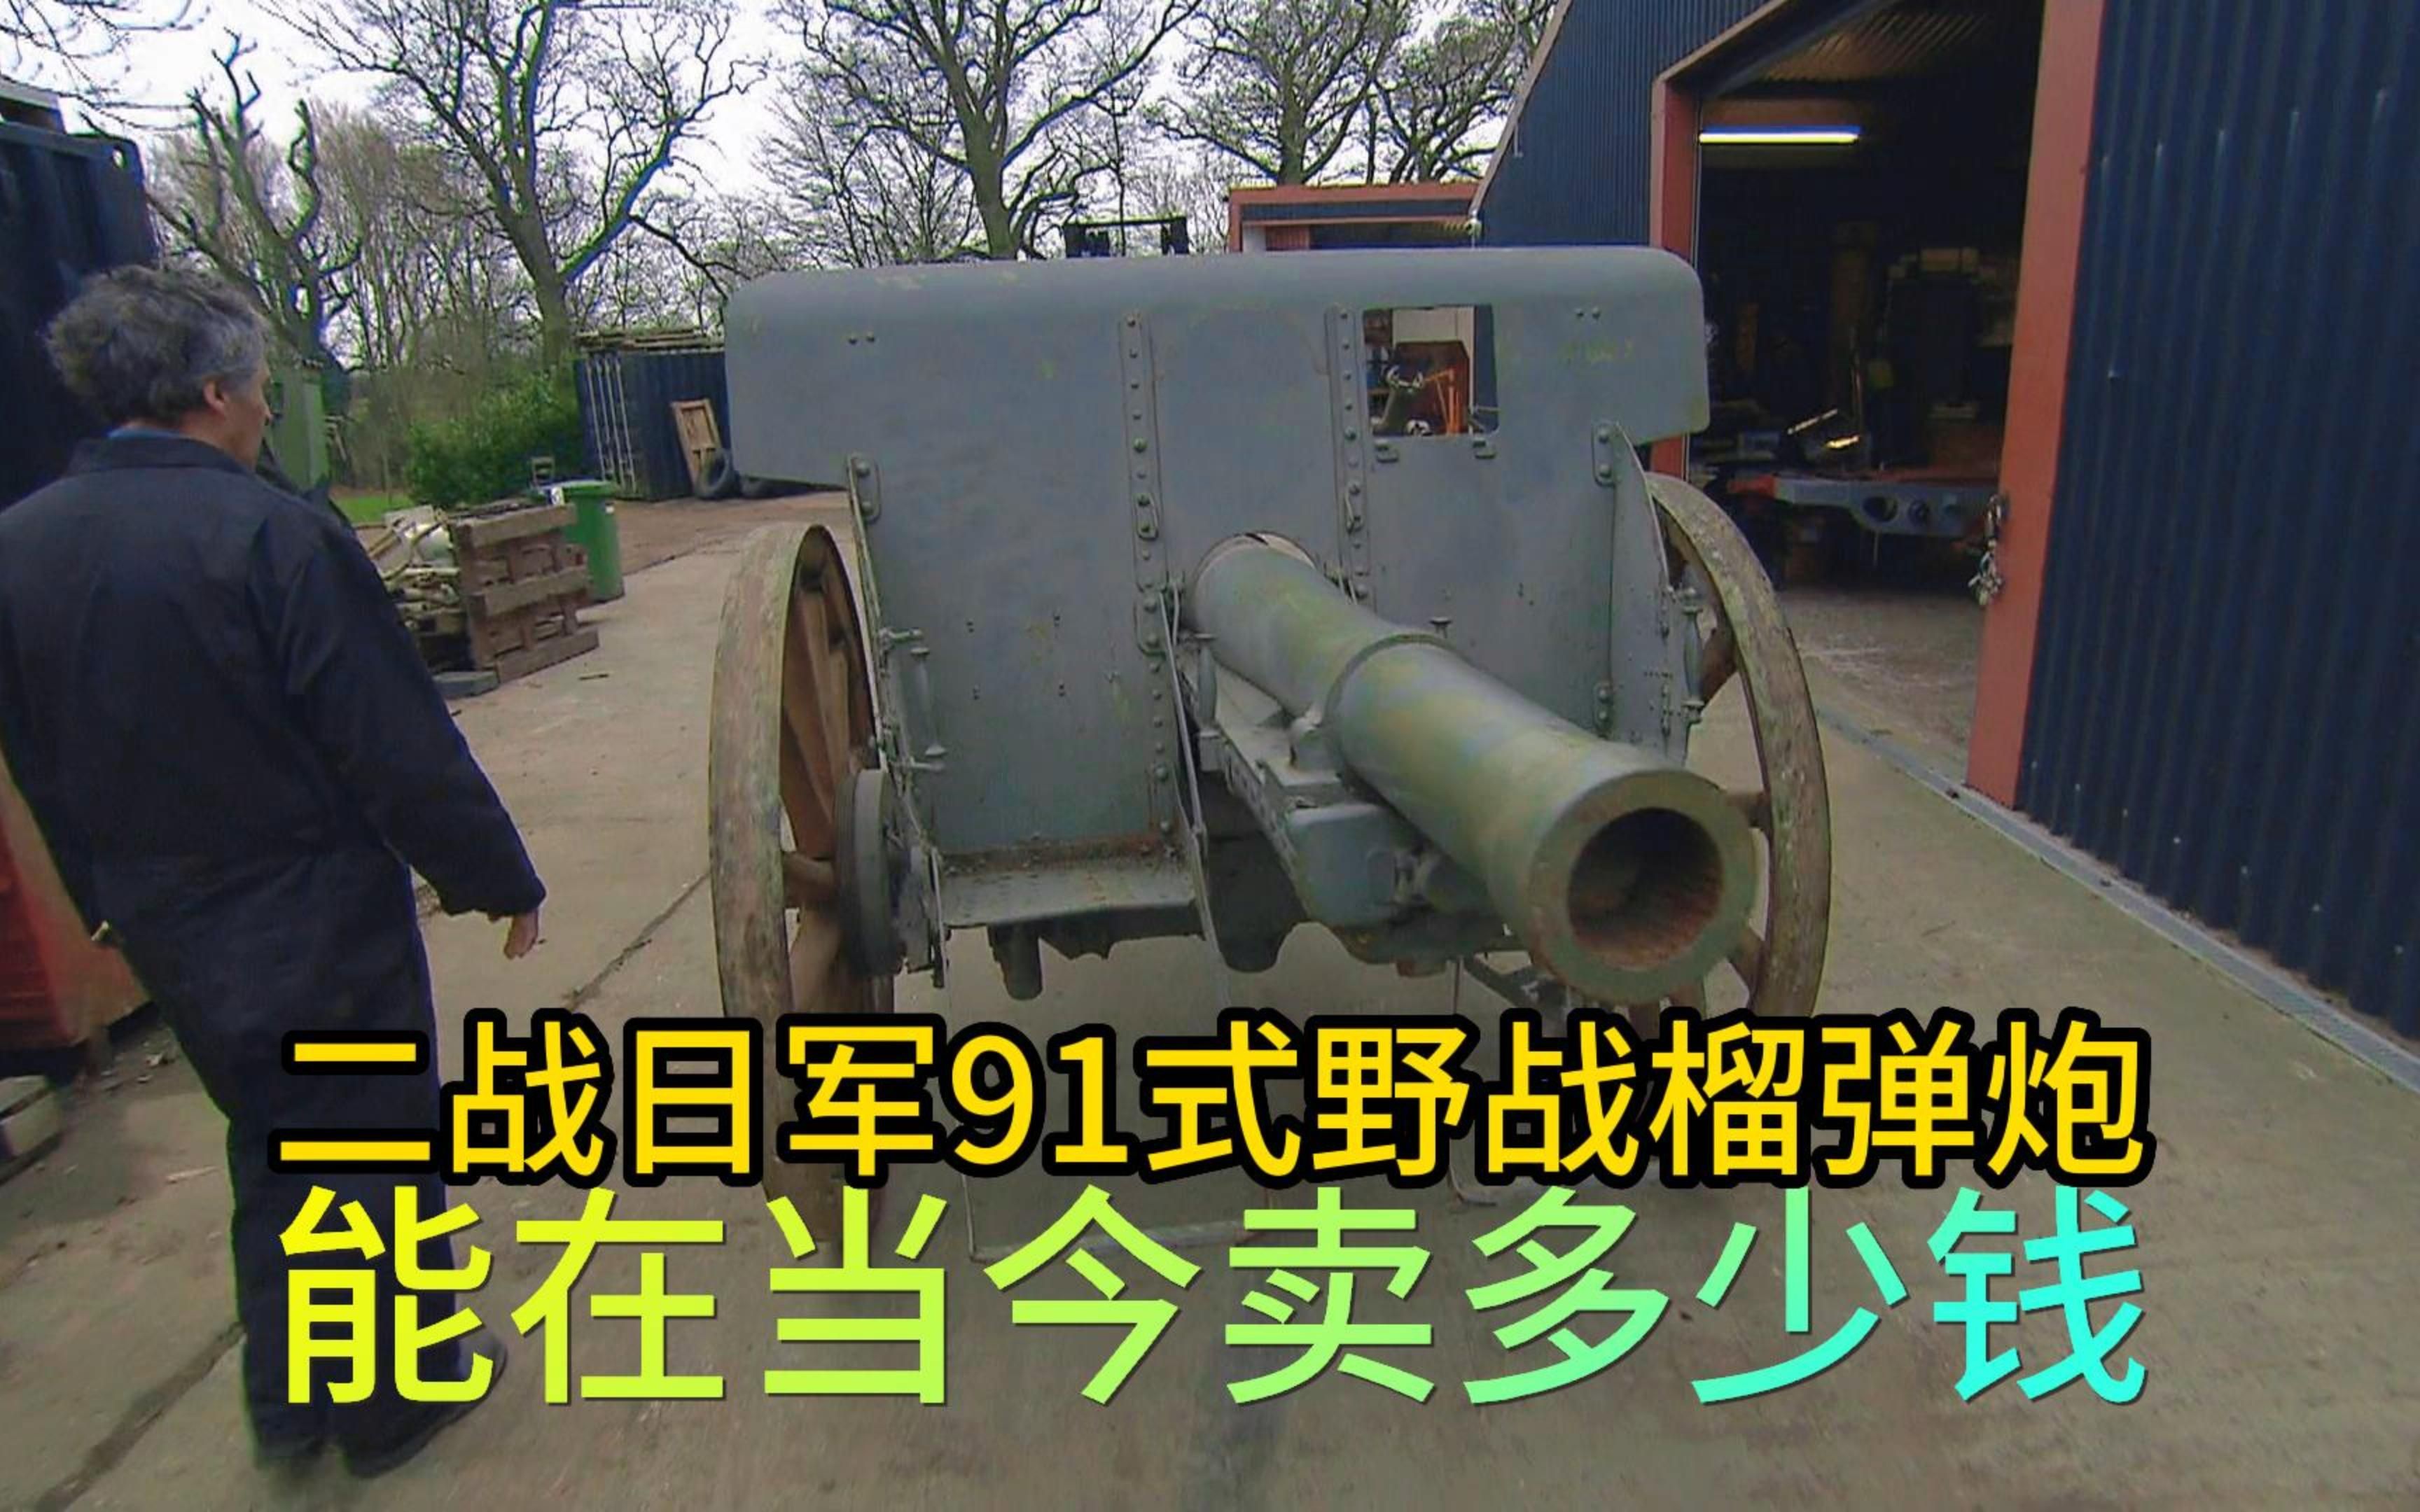 二战时期小鬼子的91式榴弹炮,到底能卖多少钱,老板赚钱美滋滋